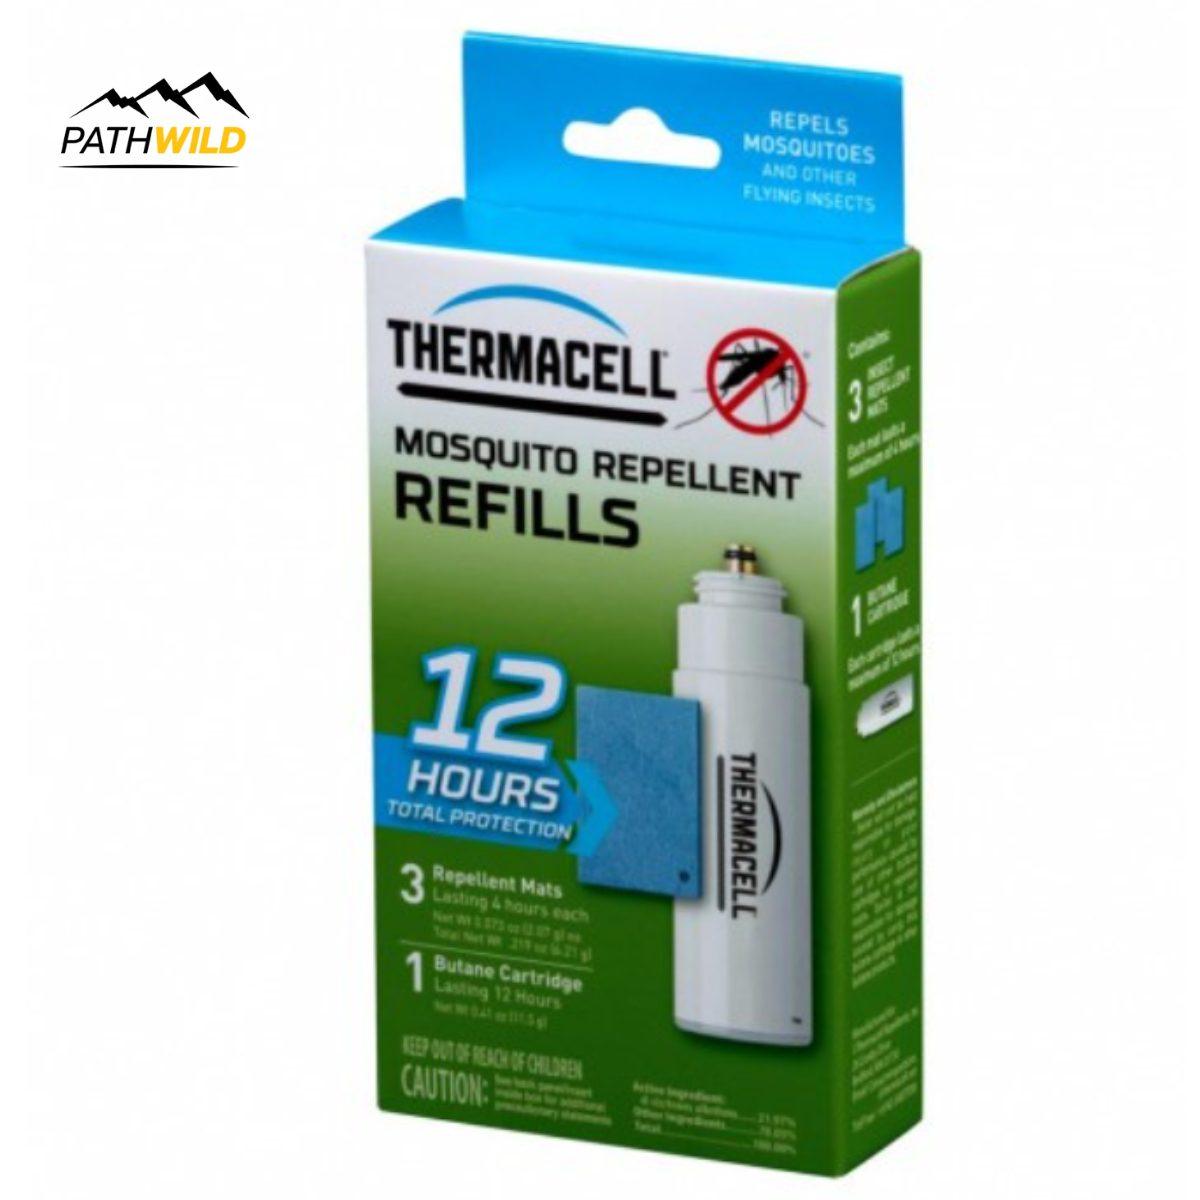 THERMACELL 12 HOURS REFILL THERMACELL 12 HOURS REFILL THERMACELL REFILL THERMACELL REFILLแก๊ส และแผ่นป้องกันแมลง แก๊ส และแผ่นป้องกันแมลง